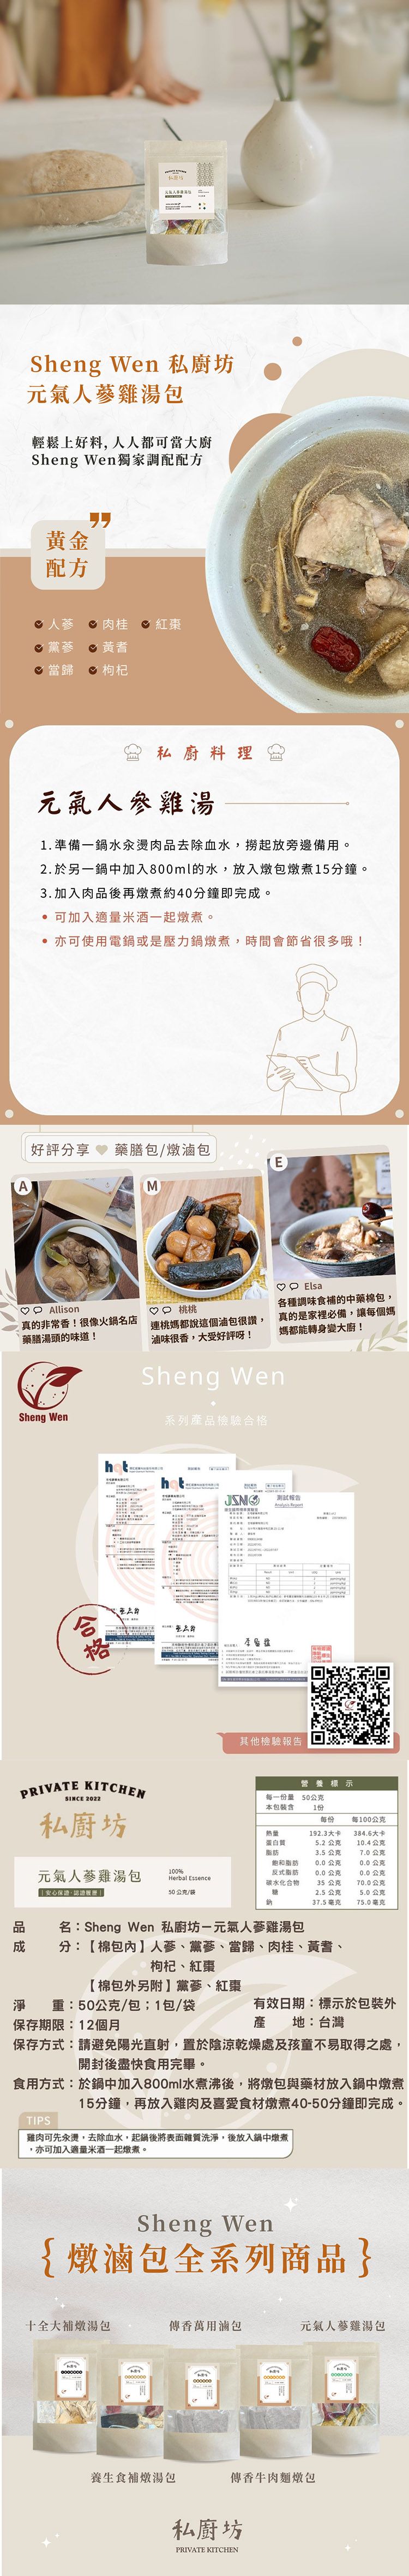 燉煮包 Sheng Wen 燉煮包 梁時